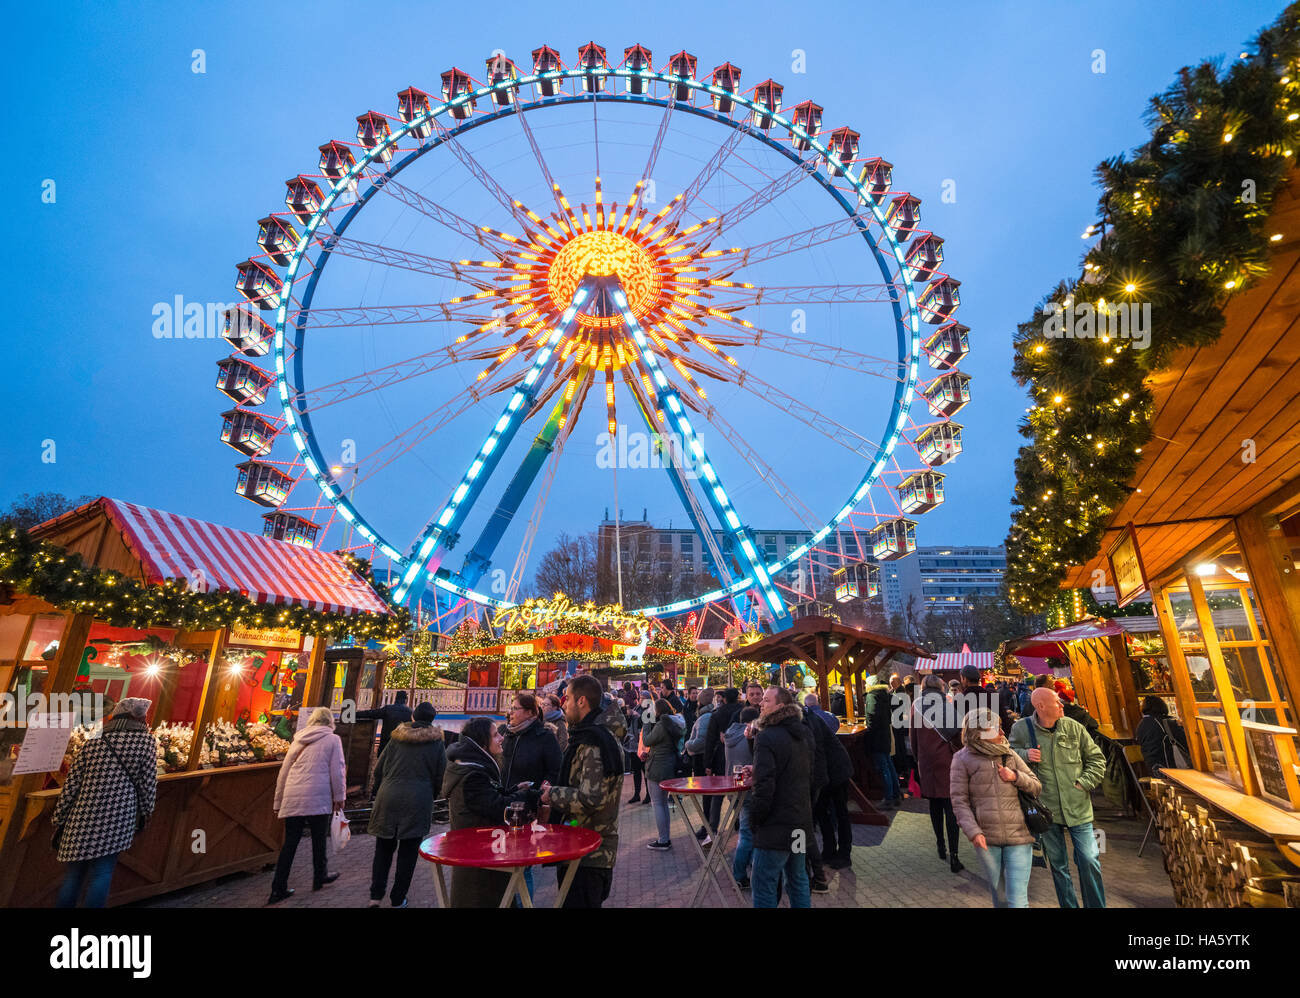 Vue de nuit sur le marché de Noël traditionnel à Alexanderplatz Mitte Berlin Allemagne 2016 Banque D'Images